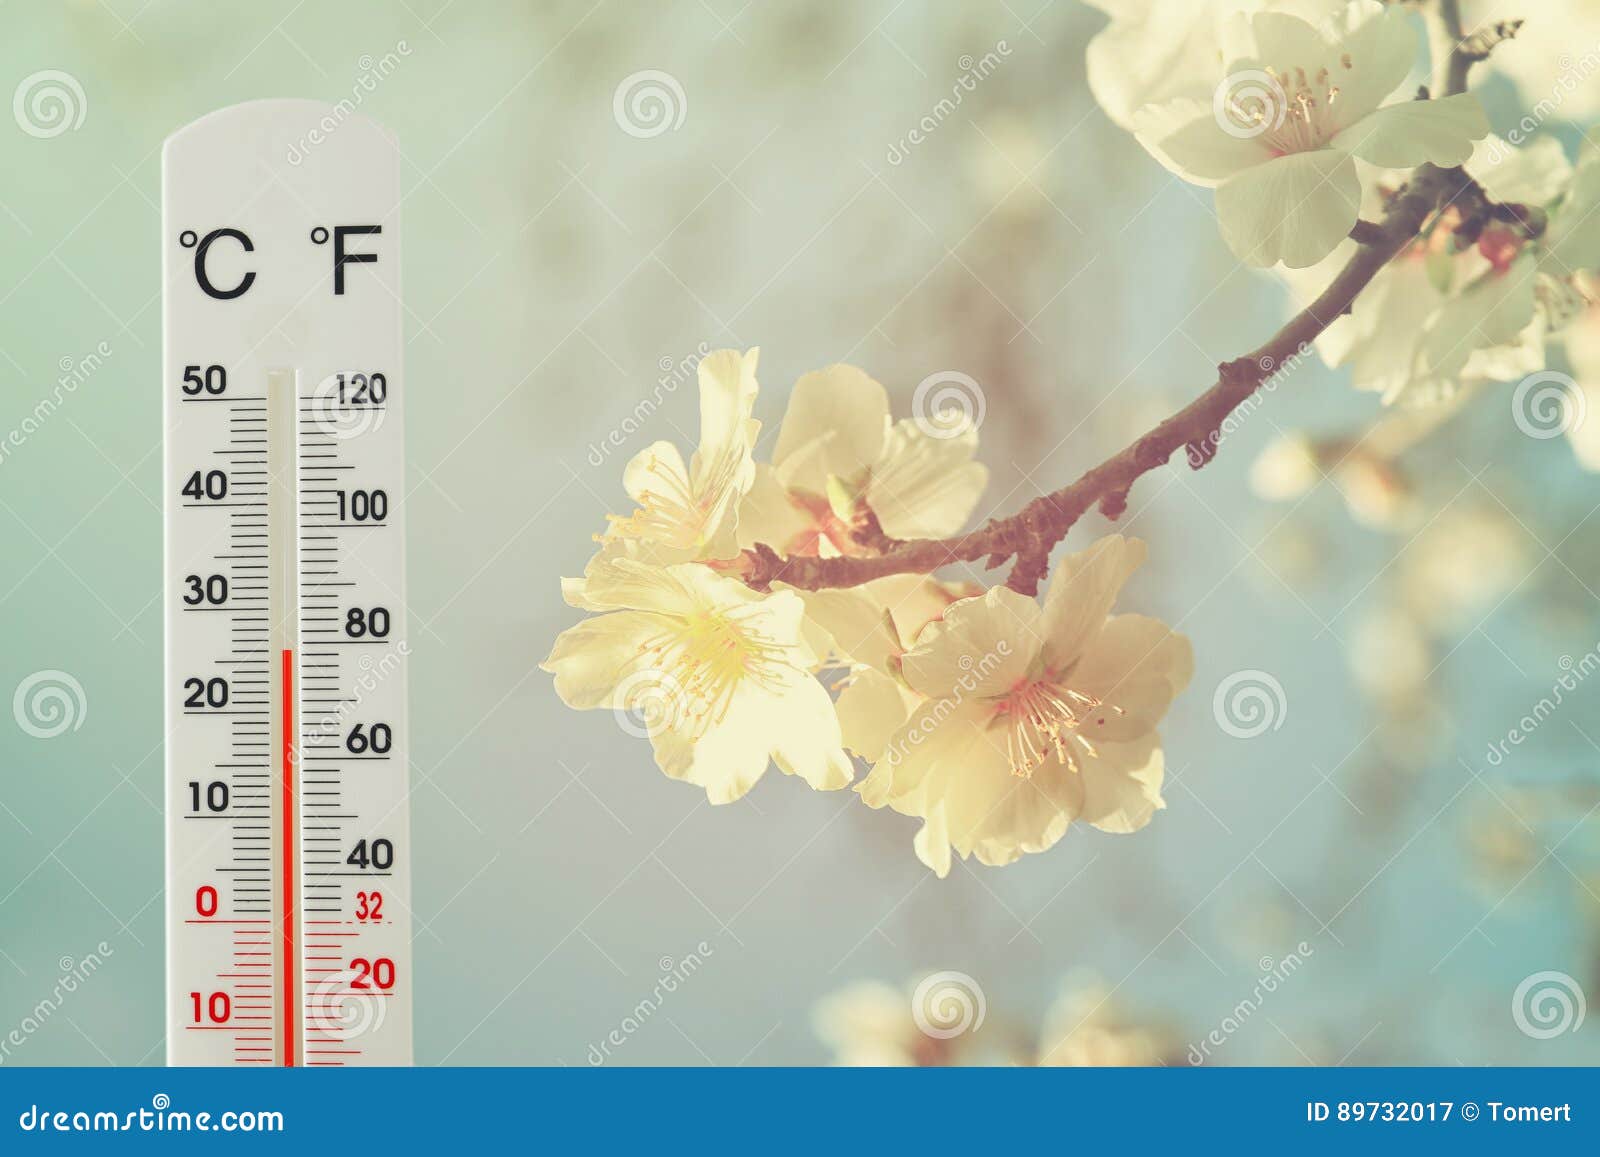 Будет ли тепло в апреле. Фото погода показывает цветок. Открытки про перемены погоды в мае. Чтобы лето было тёплое картинка ваш Гидрометцентр.